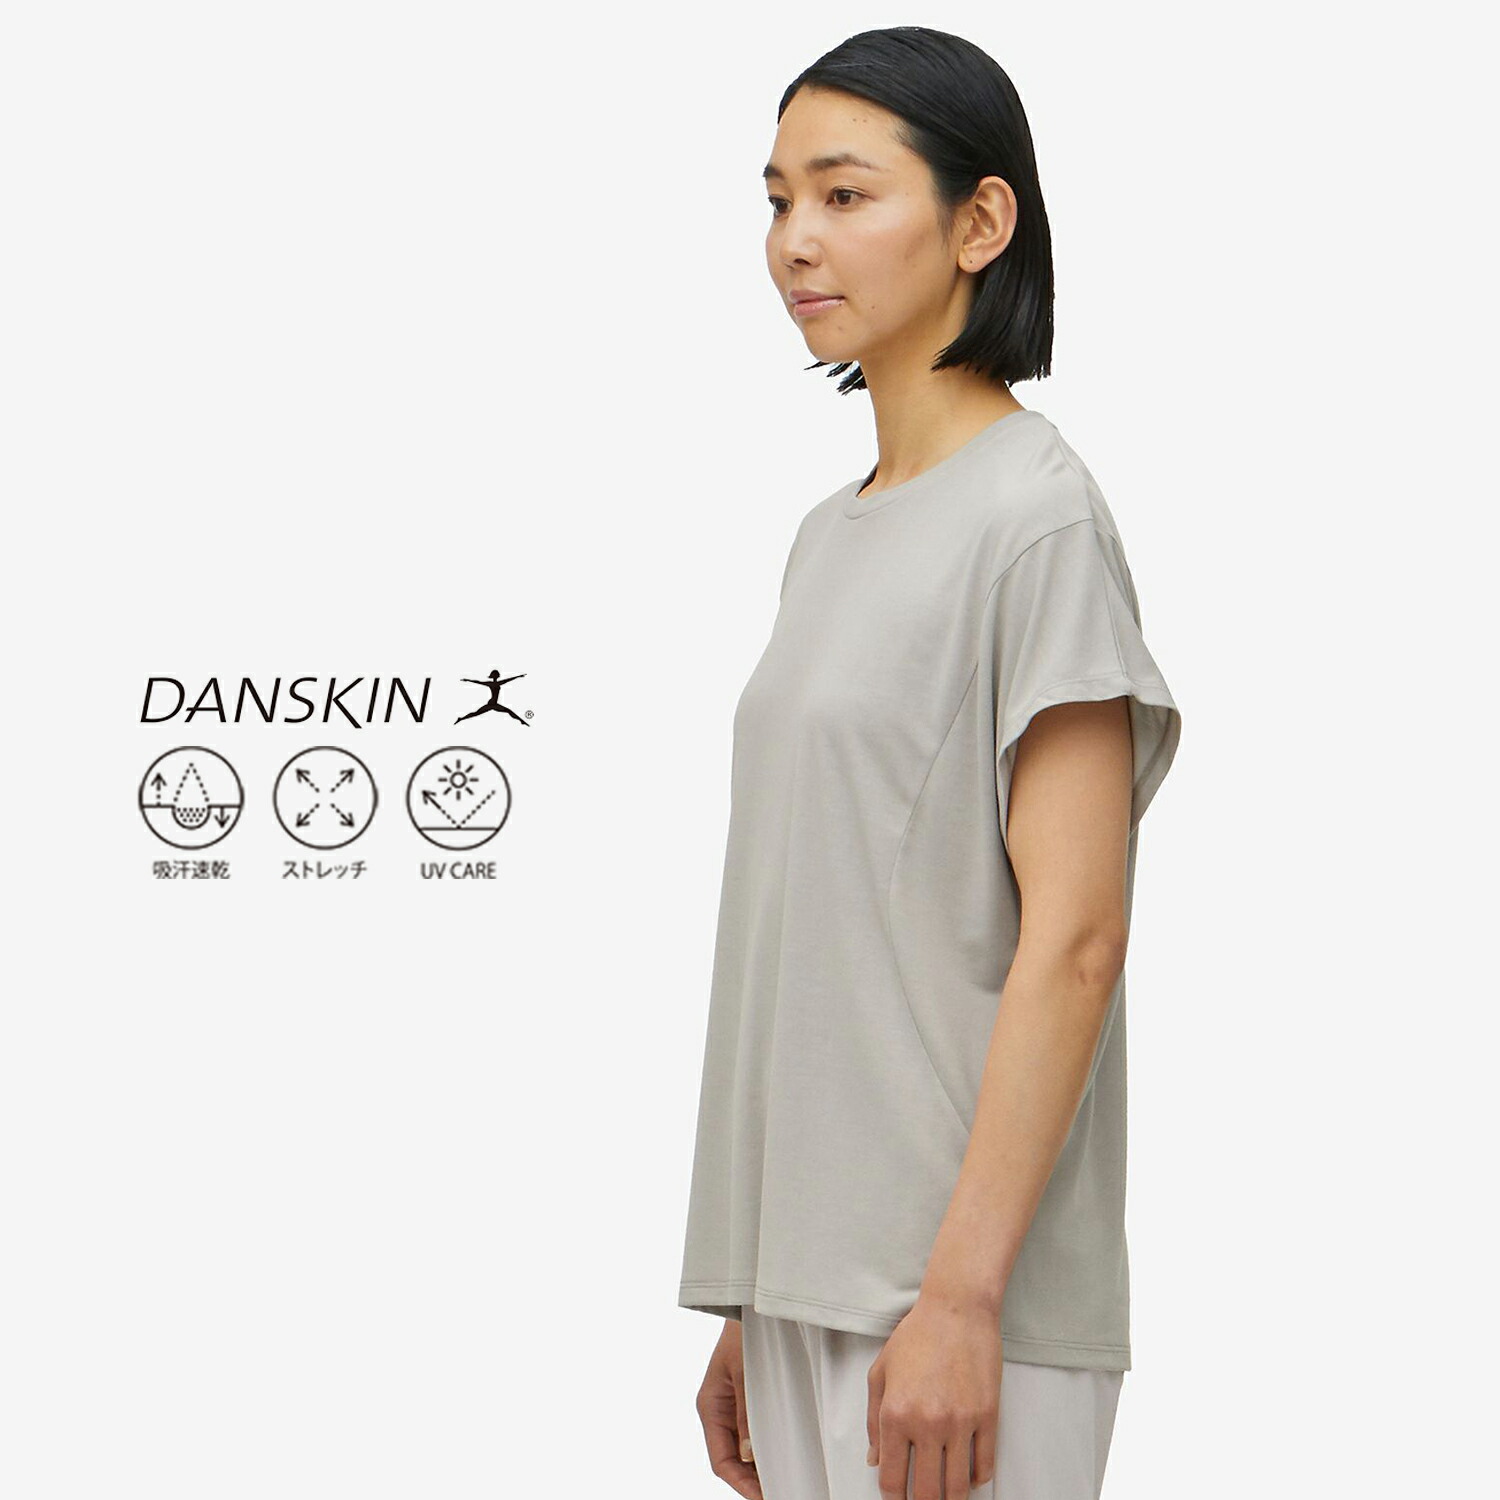 ◇ DANSKIN ダンスキン シンプル ナチュラル 半袖 Tシャツ カットソー